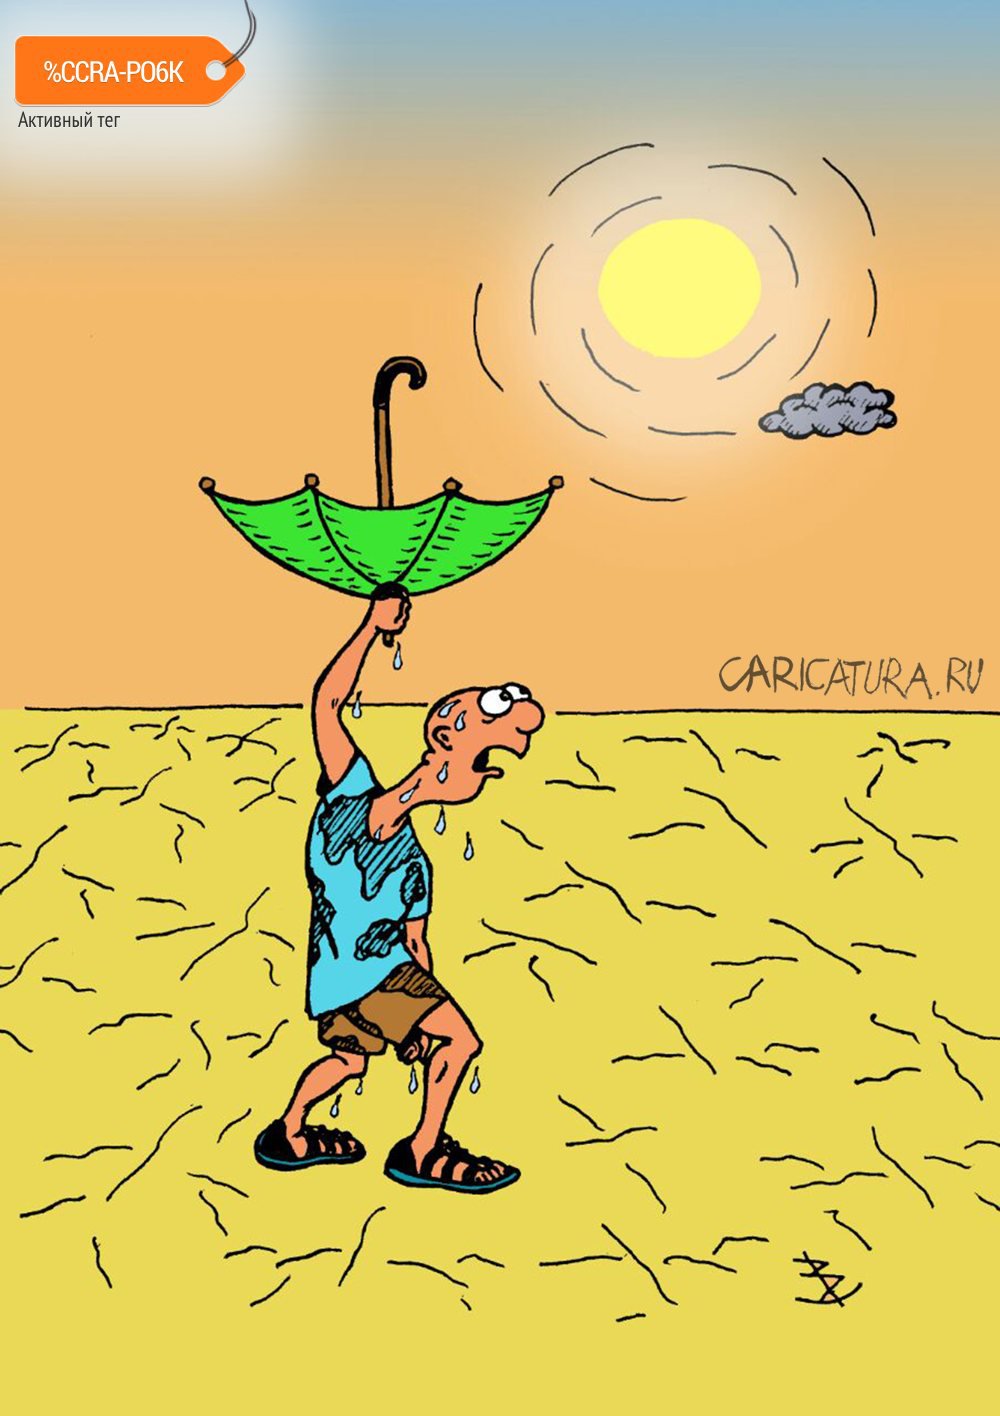 Карикатура "Изменение климата", Валентин Безрук